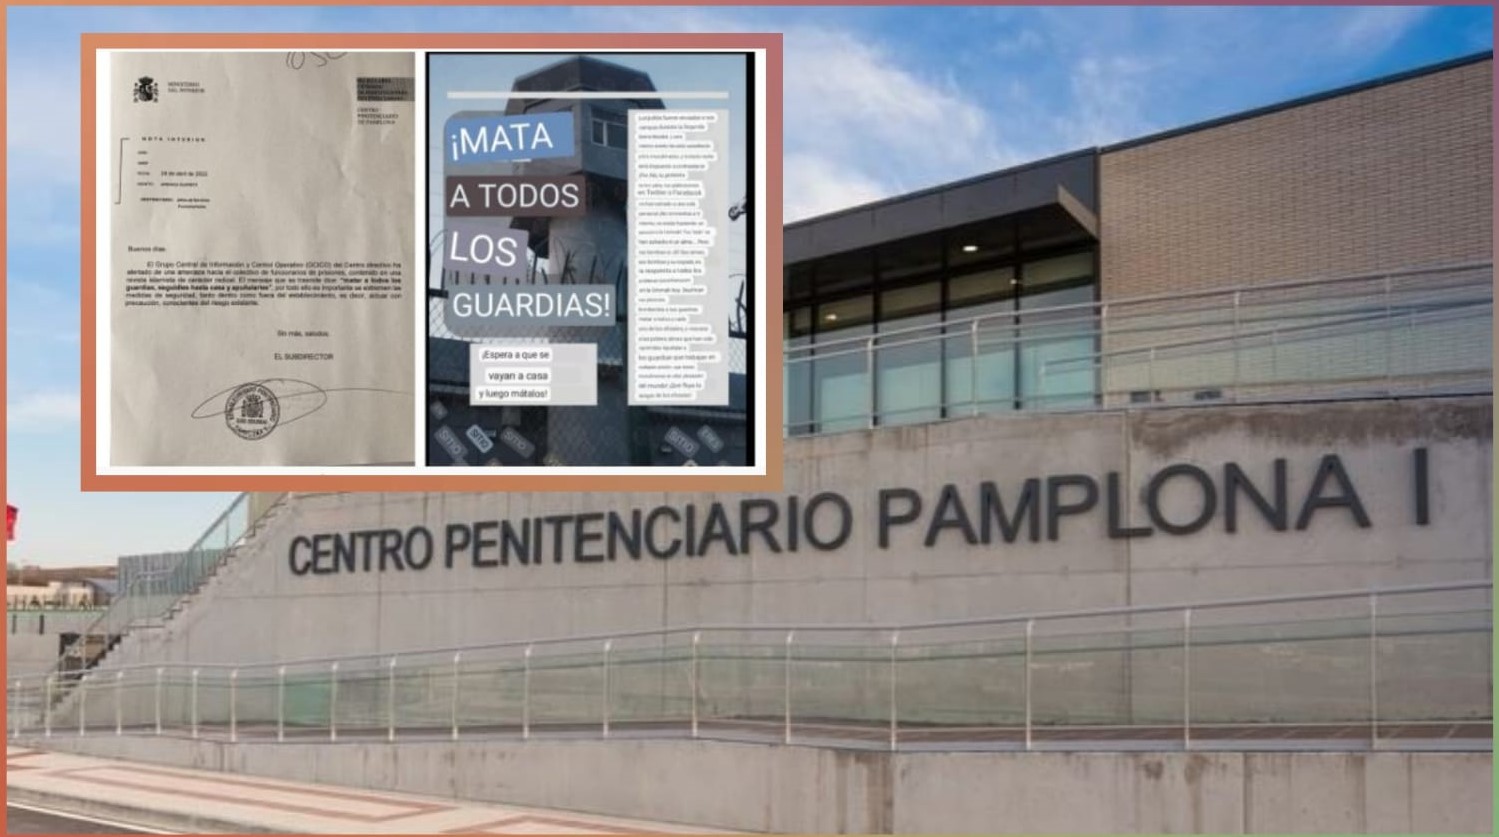 تهديد إرهابي يدخل سجن "بامبلونا" الإسباني في حالة تأهب